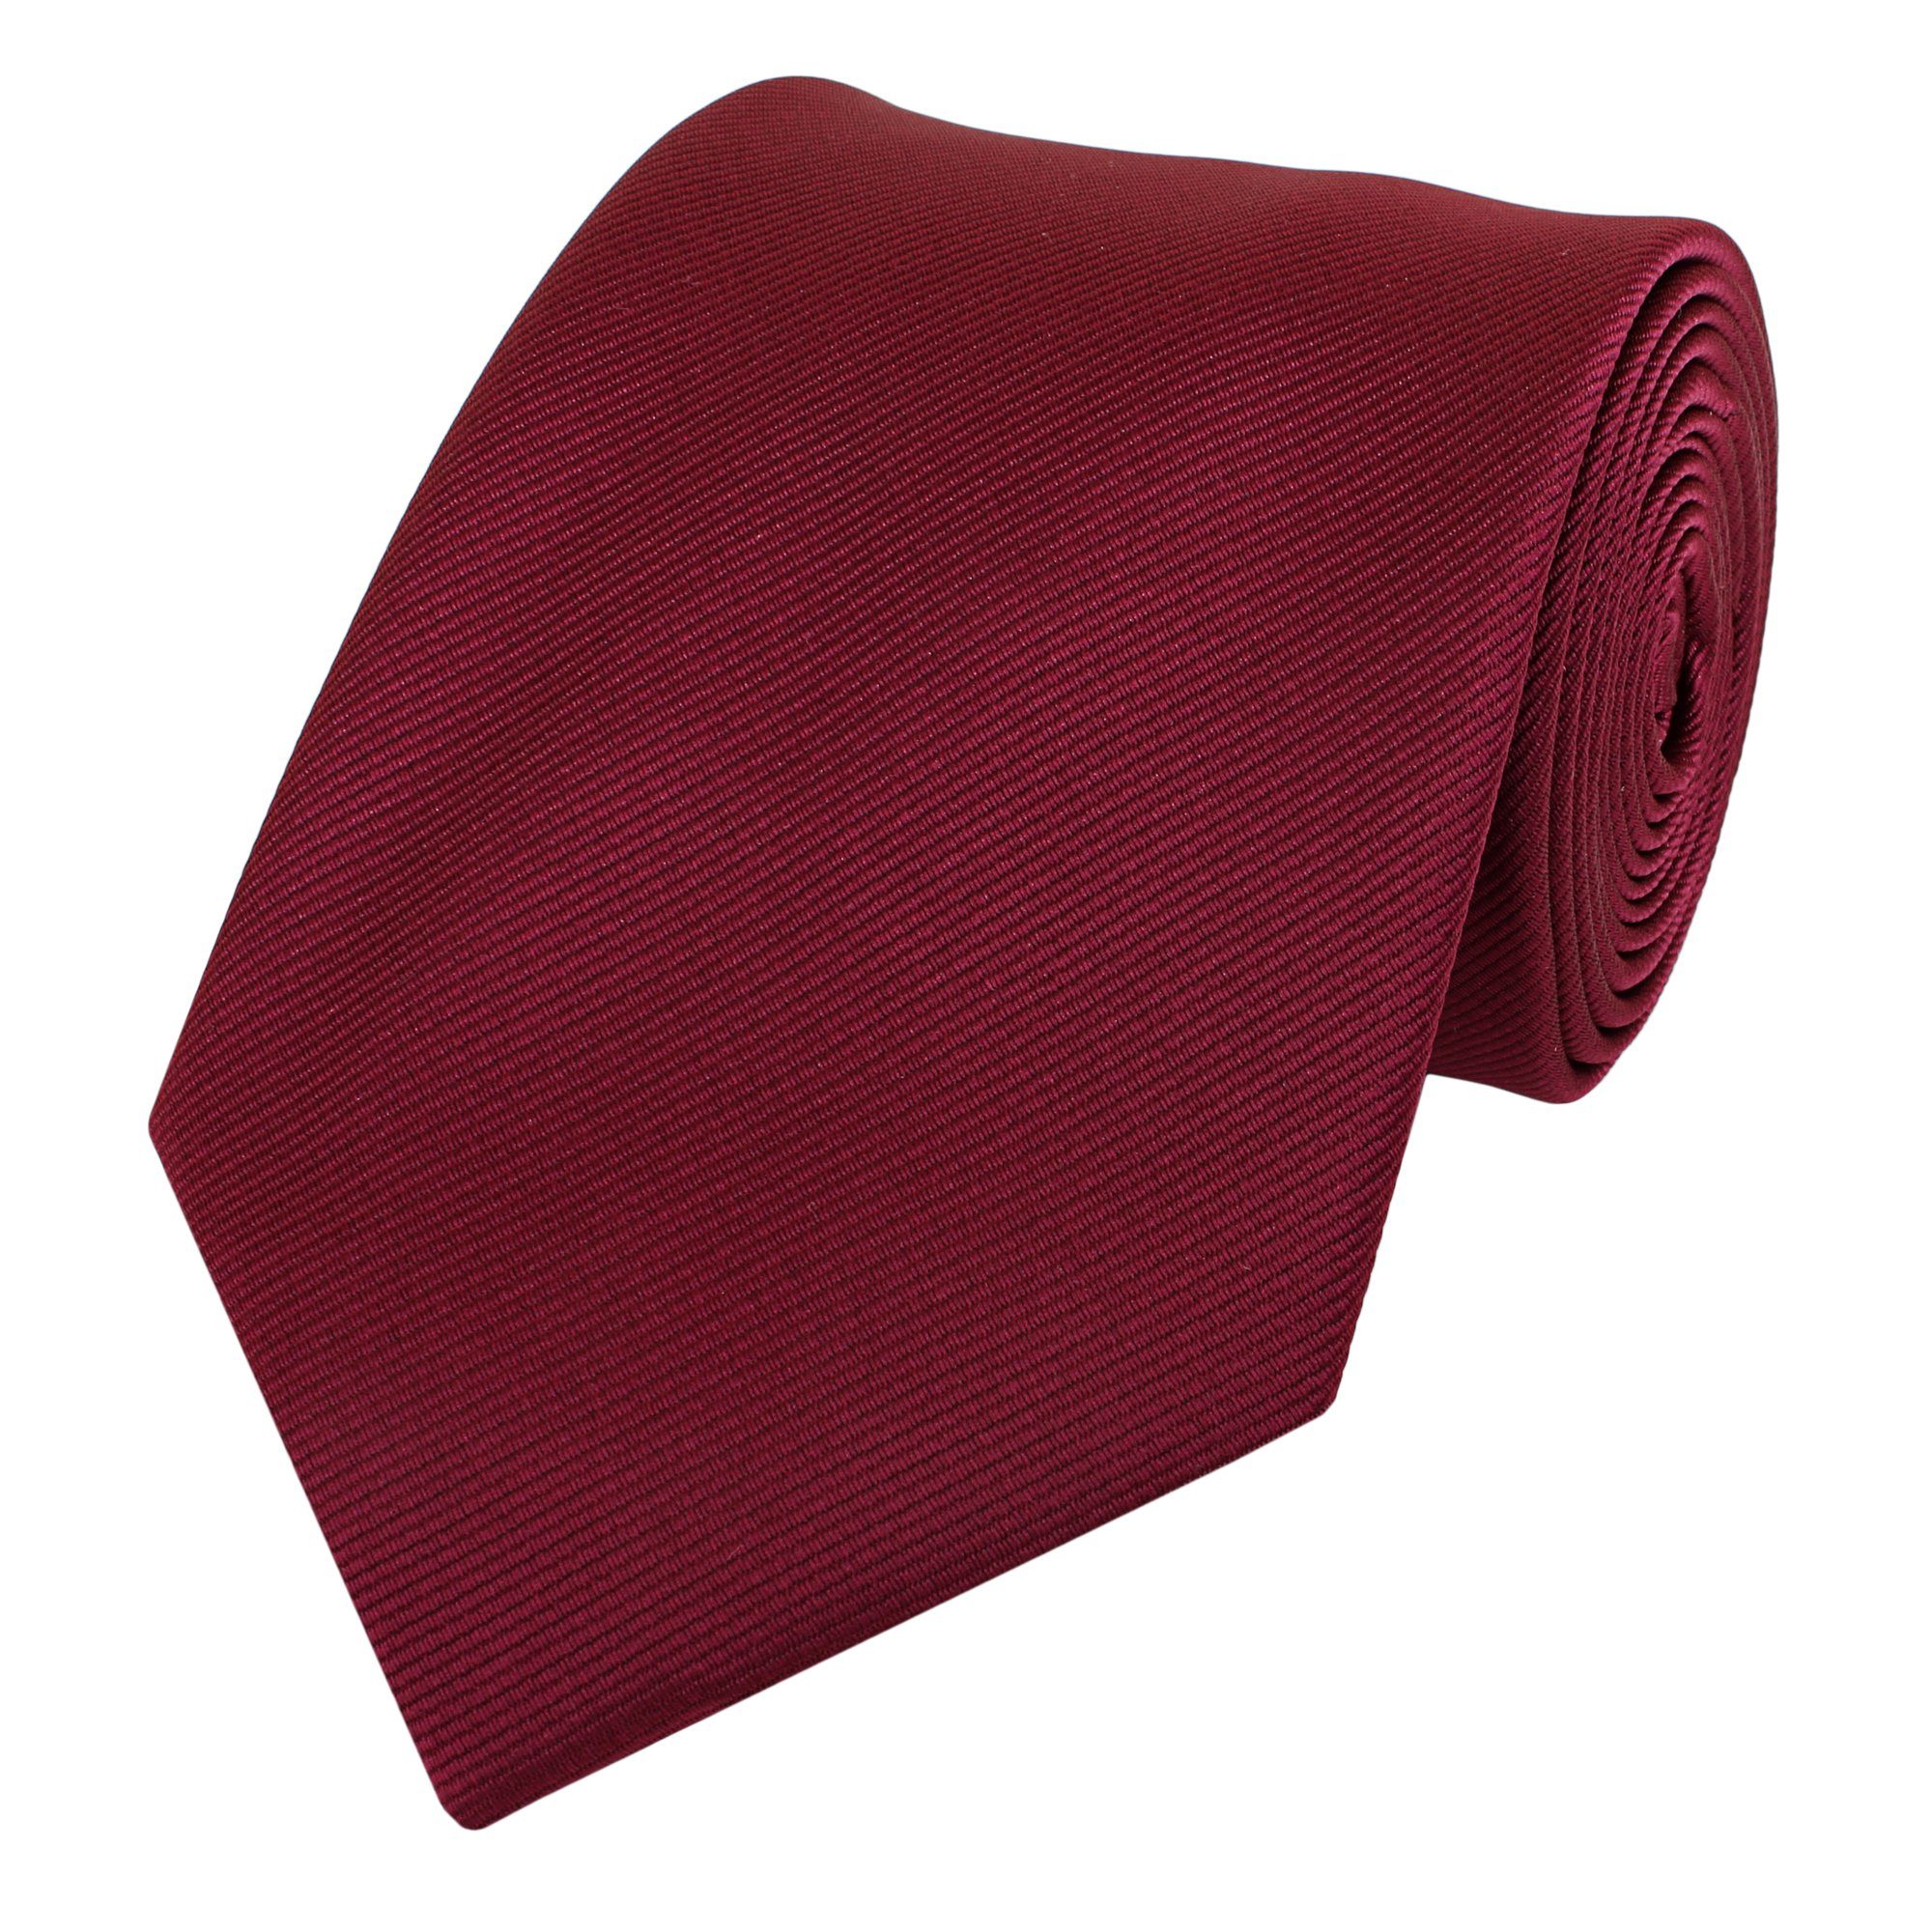 Fabio Farini Krawatte Herren Krawatte Rot - verschiedene Rote Männer Schlips in 8cm (ohne Box, Unifarben) Breit (8cm), Dunkelrot - Fez Red